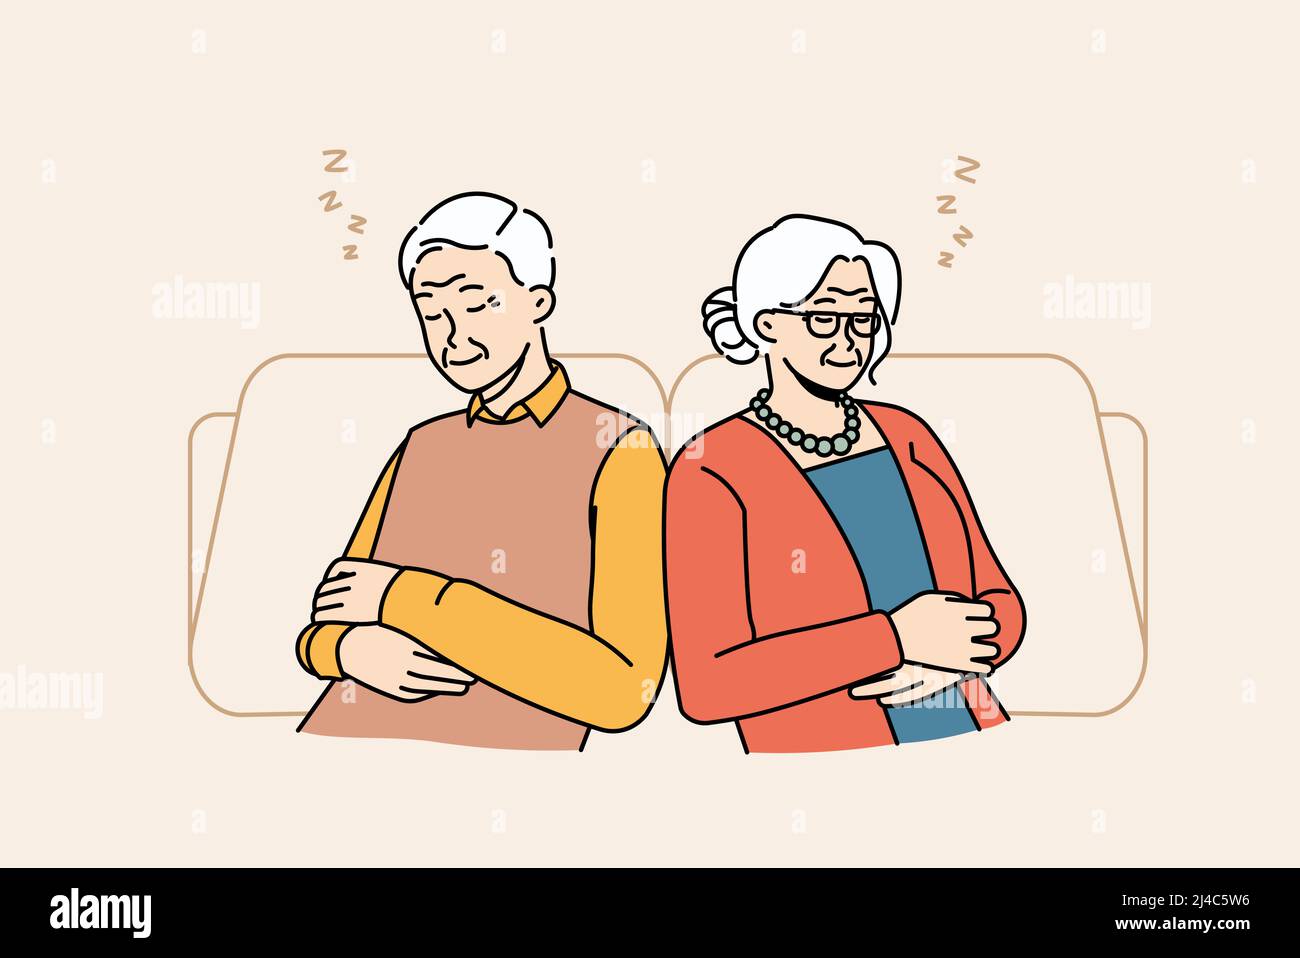 Un vieil homme et une femme fatigués s'assoient pour se détendre dans les chaises en prenant une sieste ou en rêvant de jour. Les grands-parents matures épuisés reposent dans des fauteuils dormant et voyant des rêves. Maturité et relaxation. Illustration vectorielle. Illustration de Vecteur